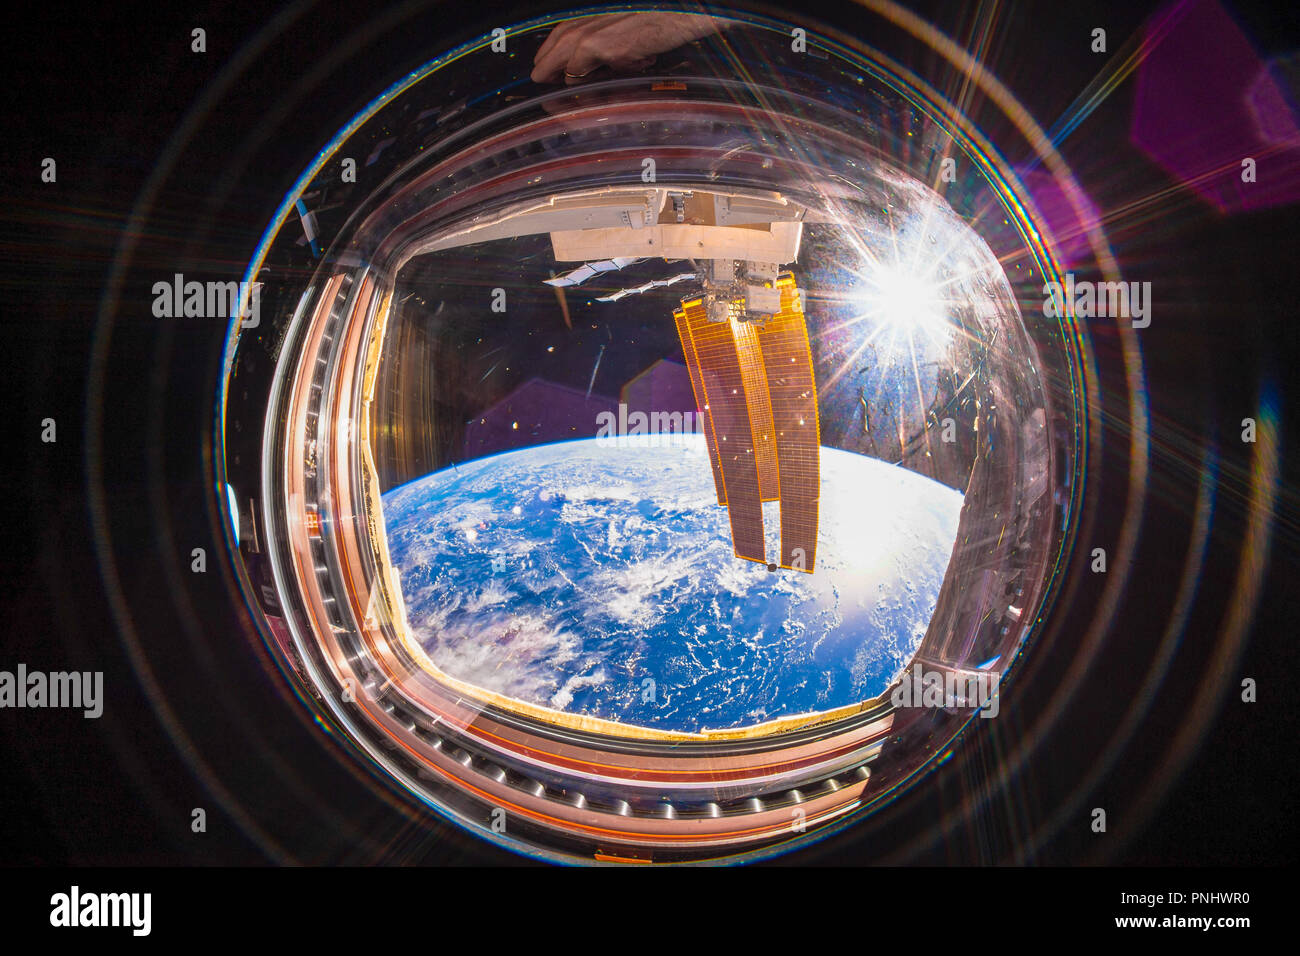 La belle planète Terre est encadrée dans une fenêtre de l'ISS. Amélioration numérique d'une image par la NASA Banque D'Images